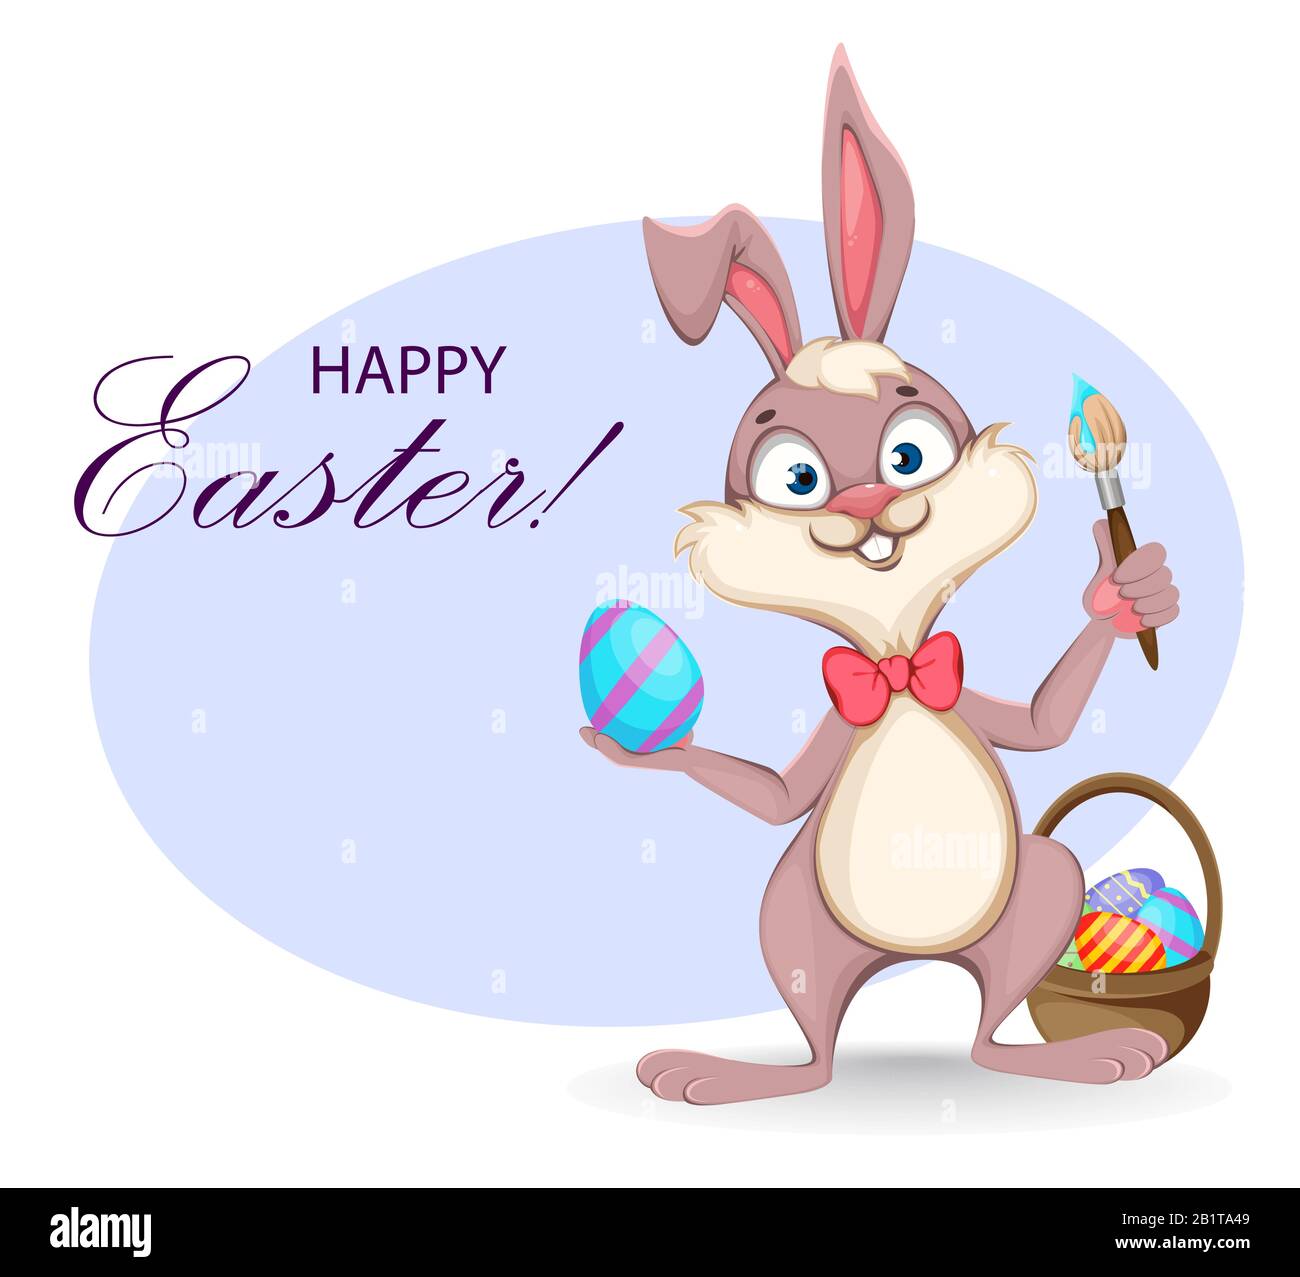 Frohe Ostern Grußkarte. Lustiger Zeichentrickkaninchen hält Pinsel und farbiges Ei. Vektor-Darstellung des Lagerbestands Stock Vektor